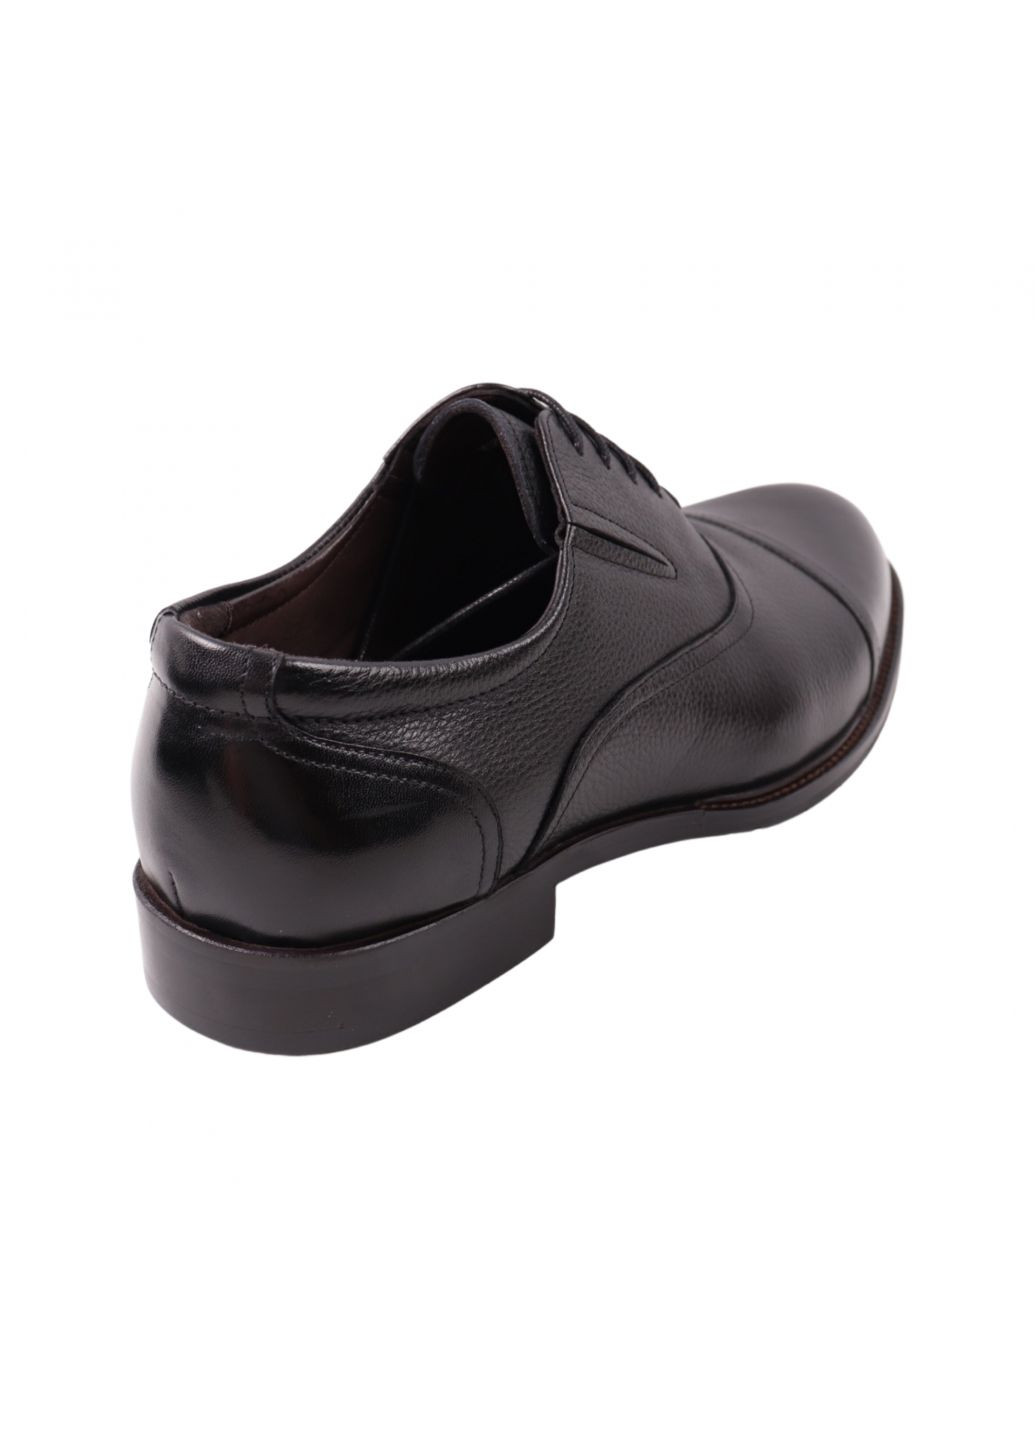 Черные туфли мужские lido marinozi черные натуральная кожа Lido Marinozzi